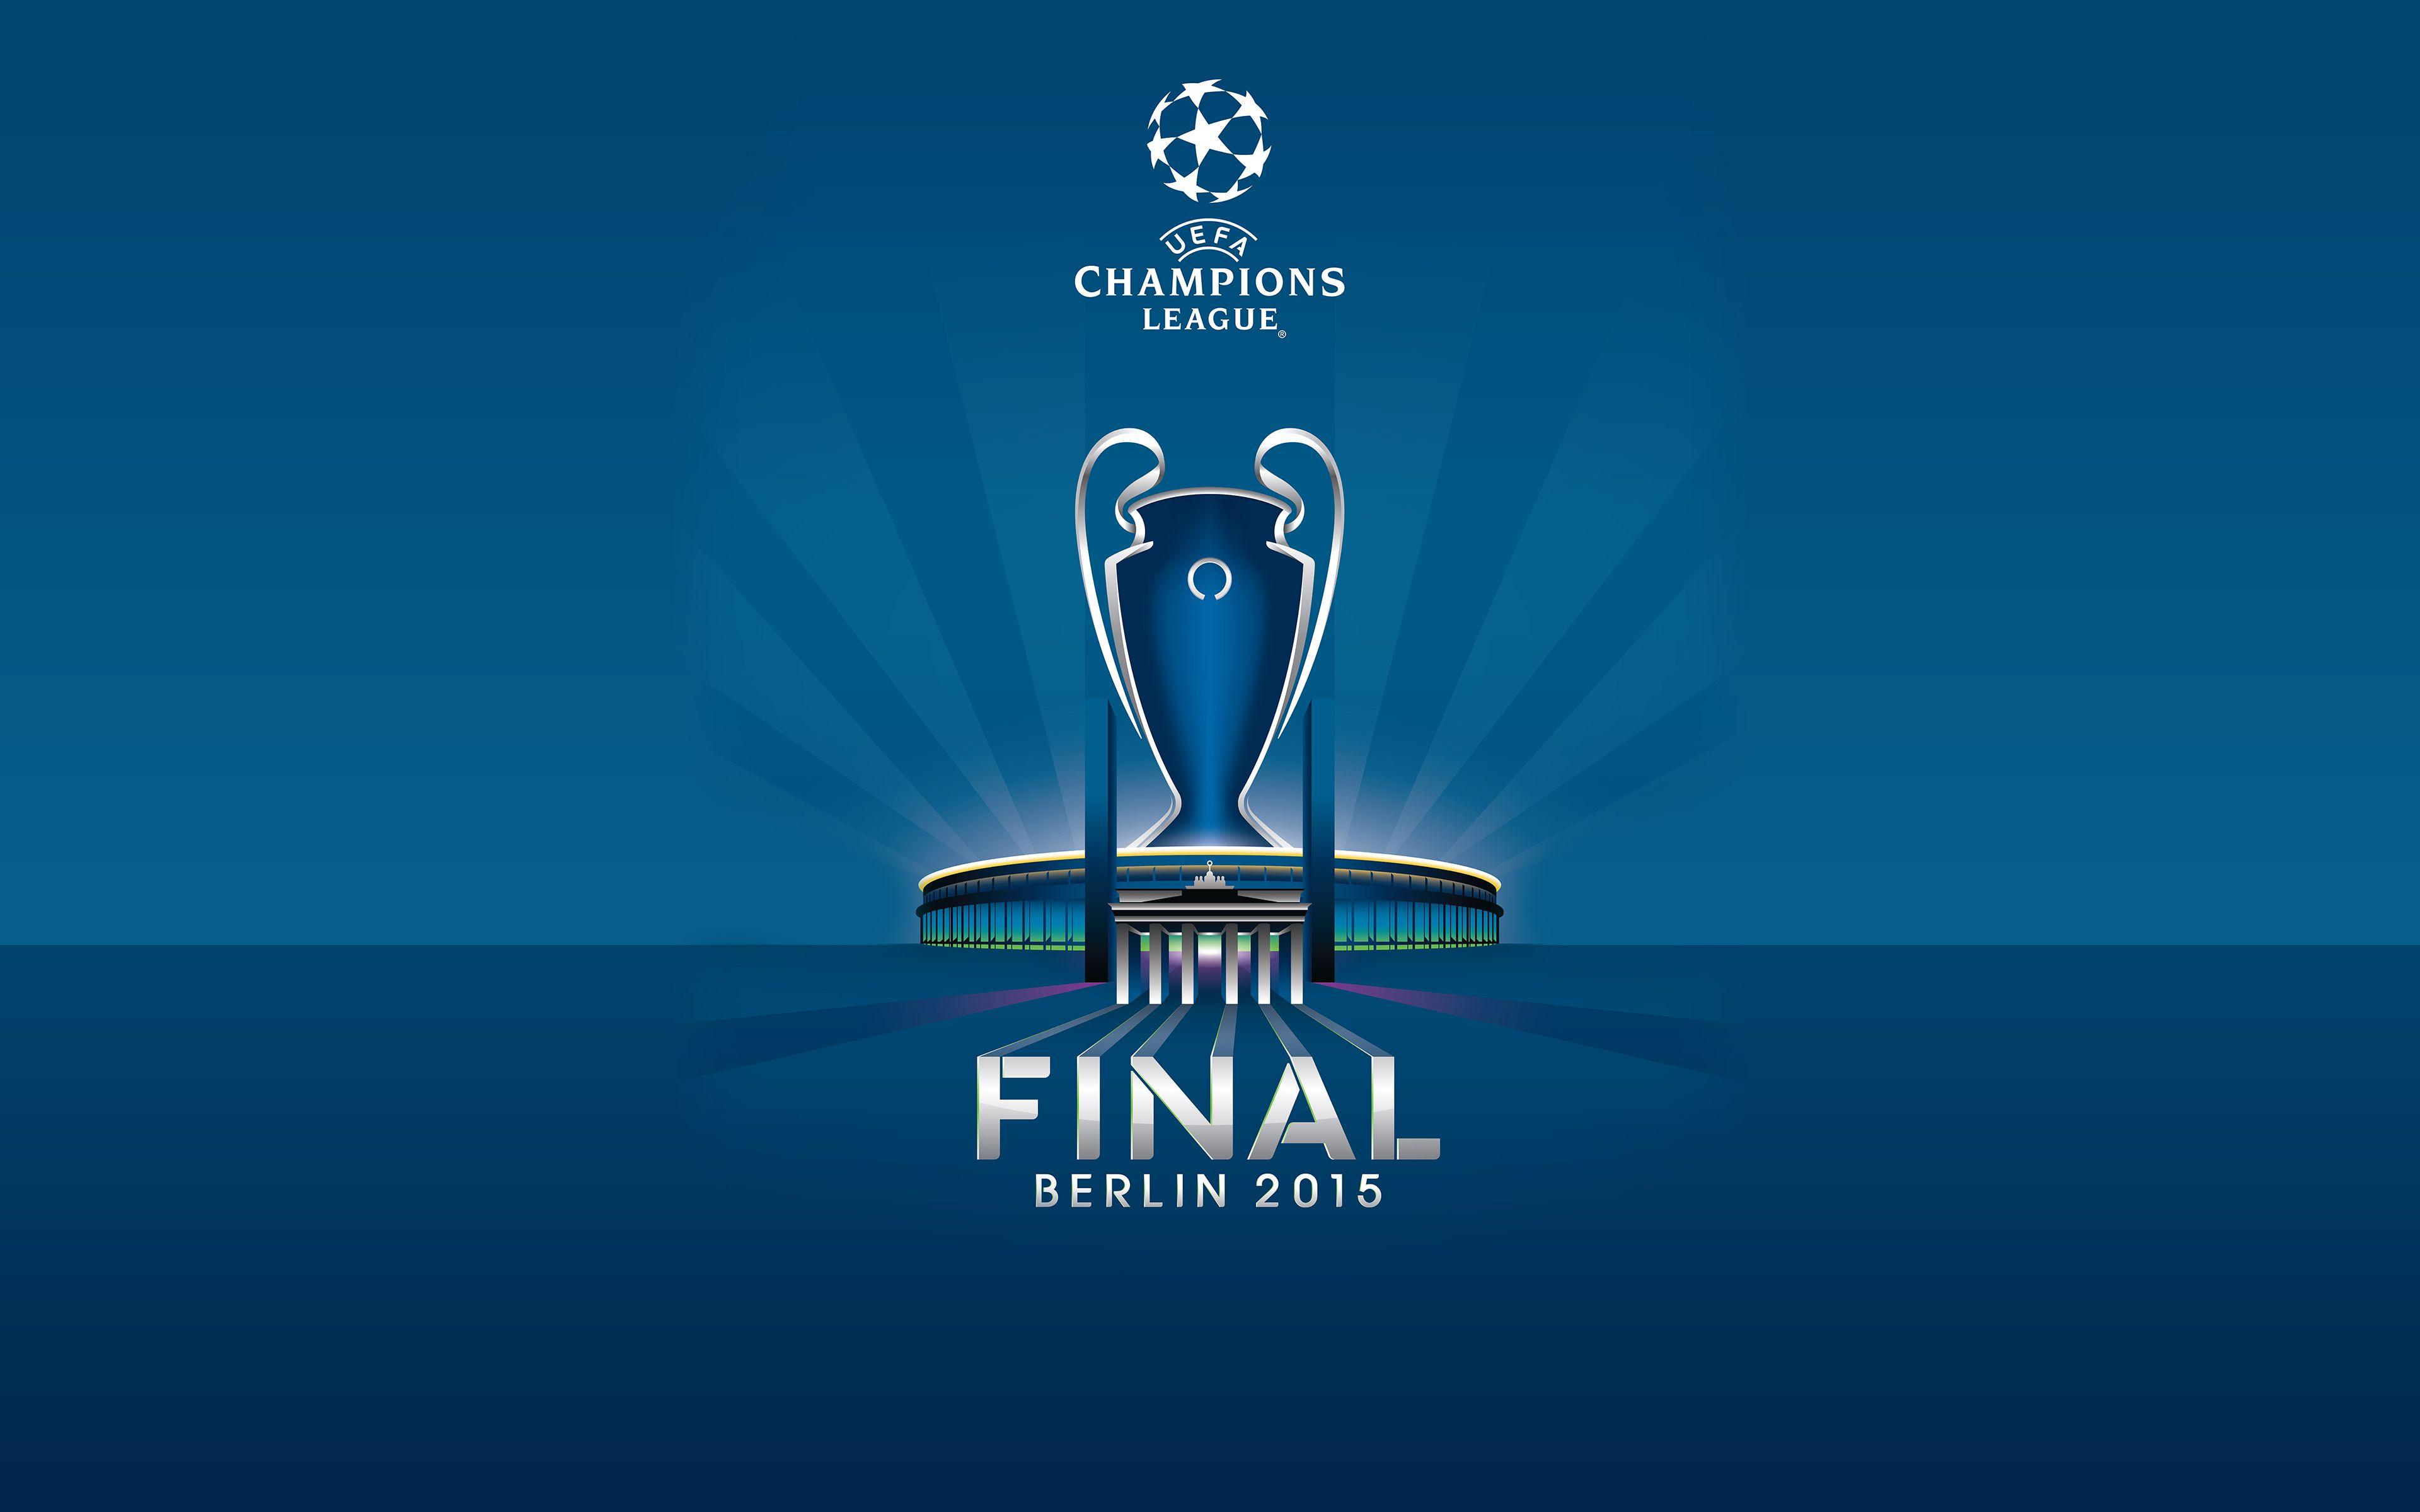 UEFA Champions League Wallpaper, Best UEFA Champions League